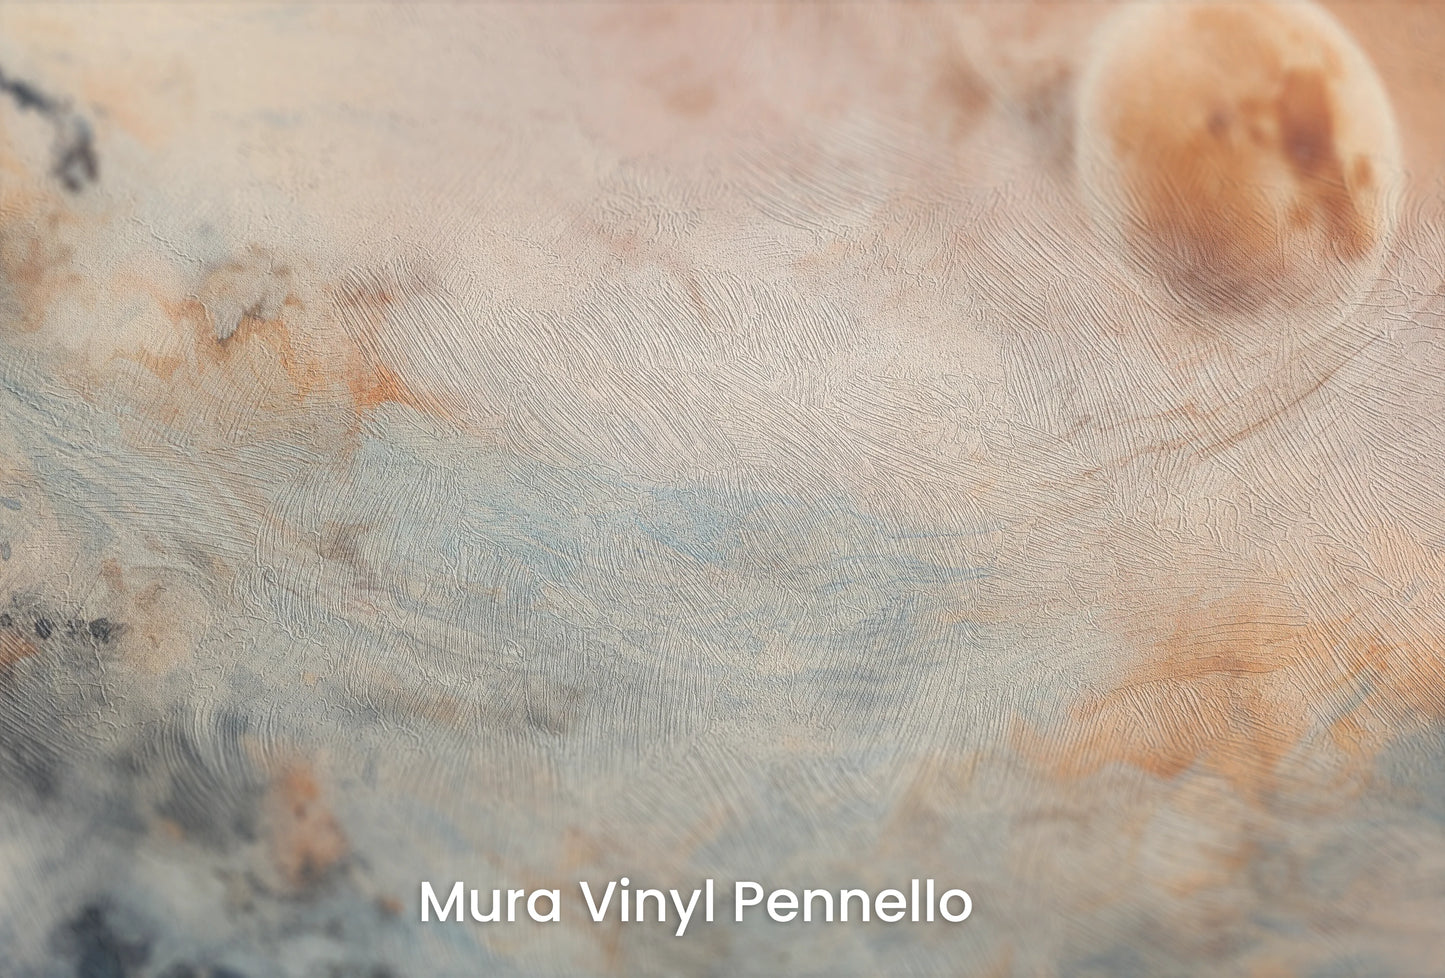 Zbliżenie na artystyczną fototapetę o nazwie Mars' Horizon #2 na podłożu Mura Vinyl Pennello - faktura pociągnięć pędzla malarskiego.